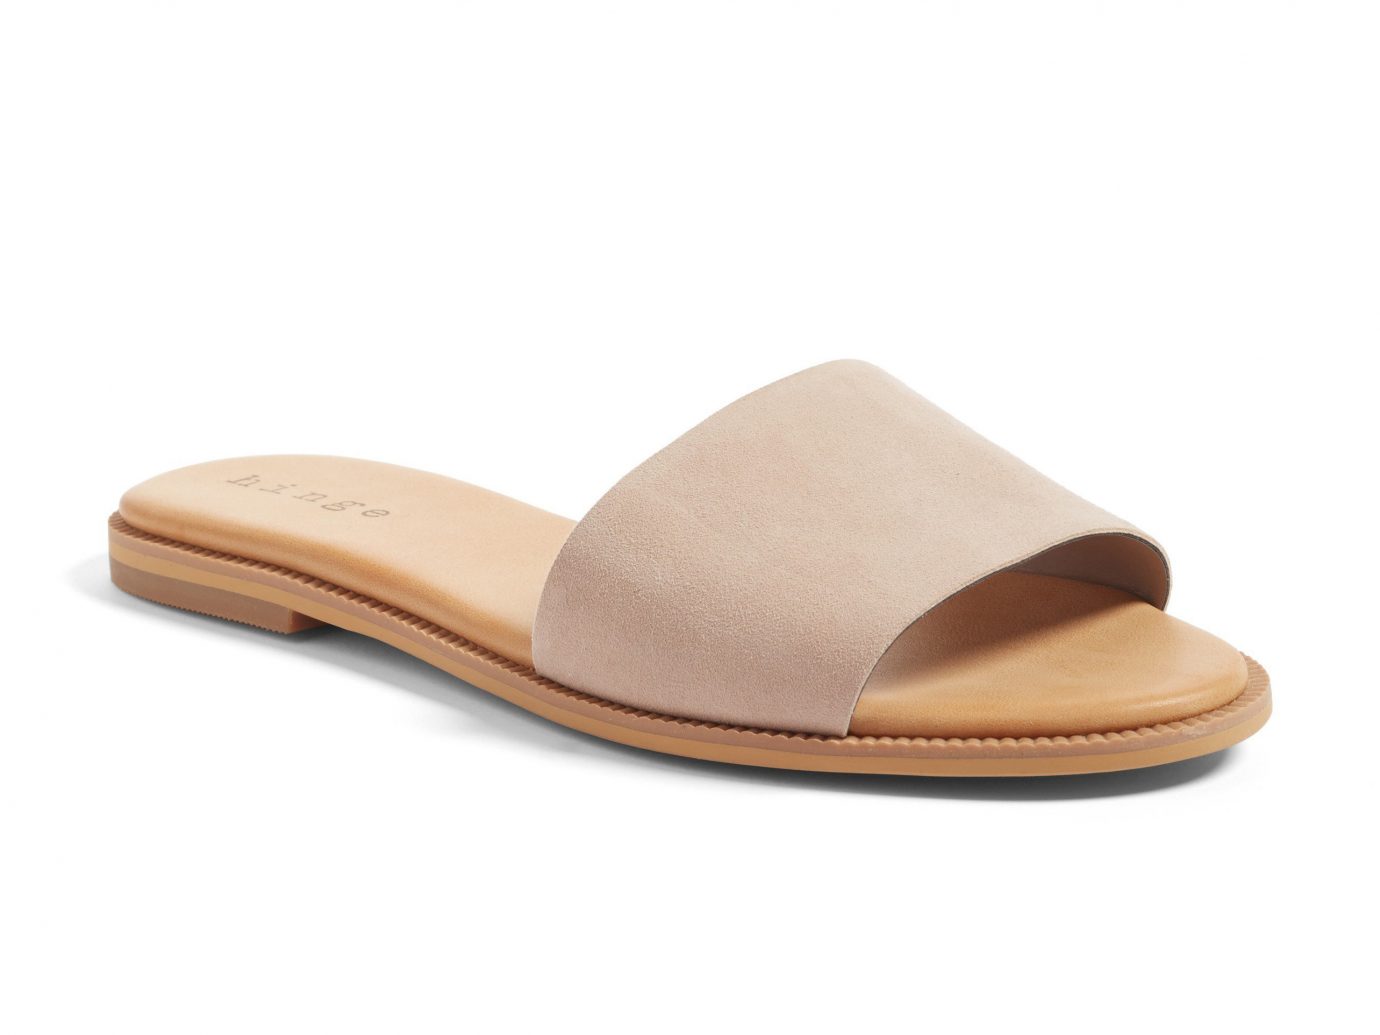 Style + Design footwear shoe beige sandal outdoor shoe product design walking shoe slipper tan